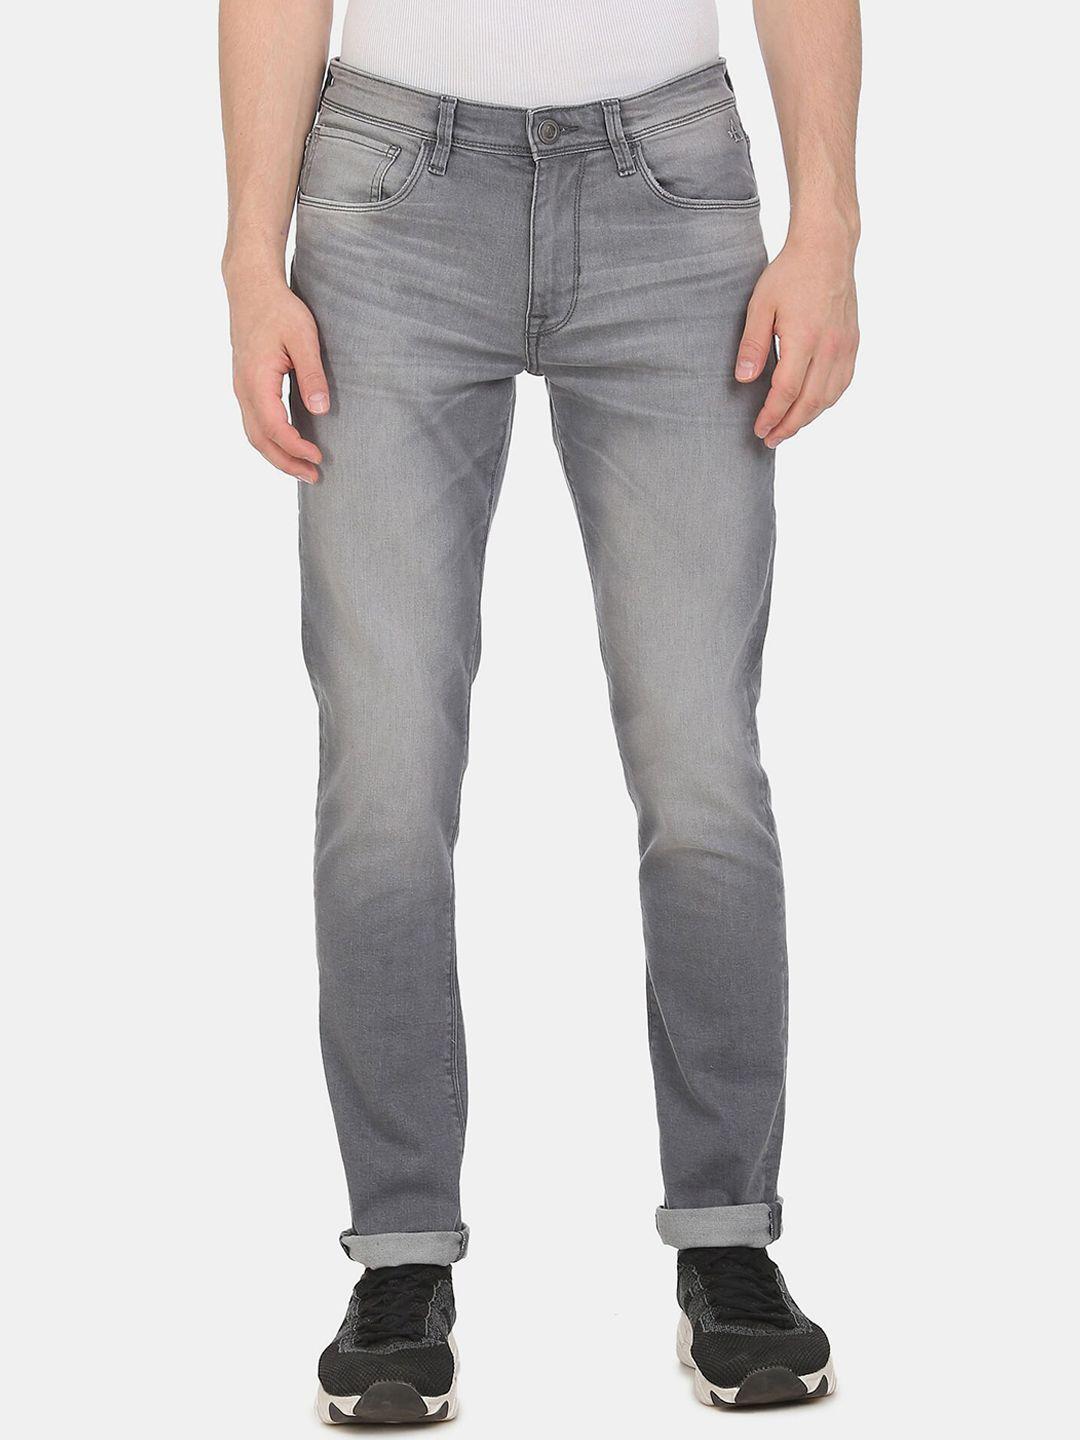 arrow-sport-men-grey-slim-fit-heavy-fade-jeans